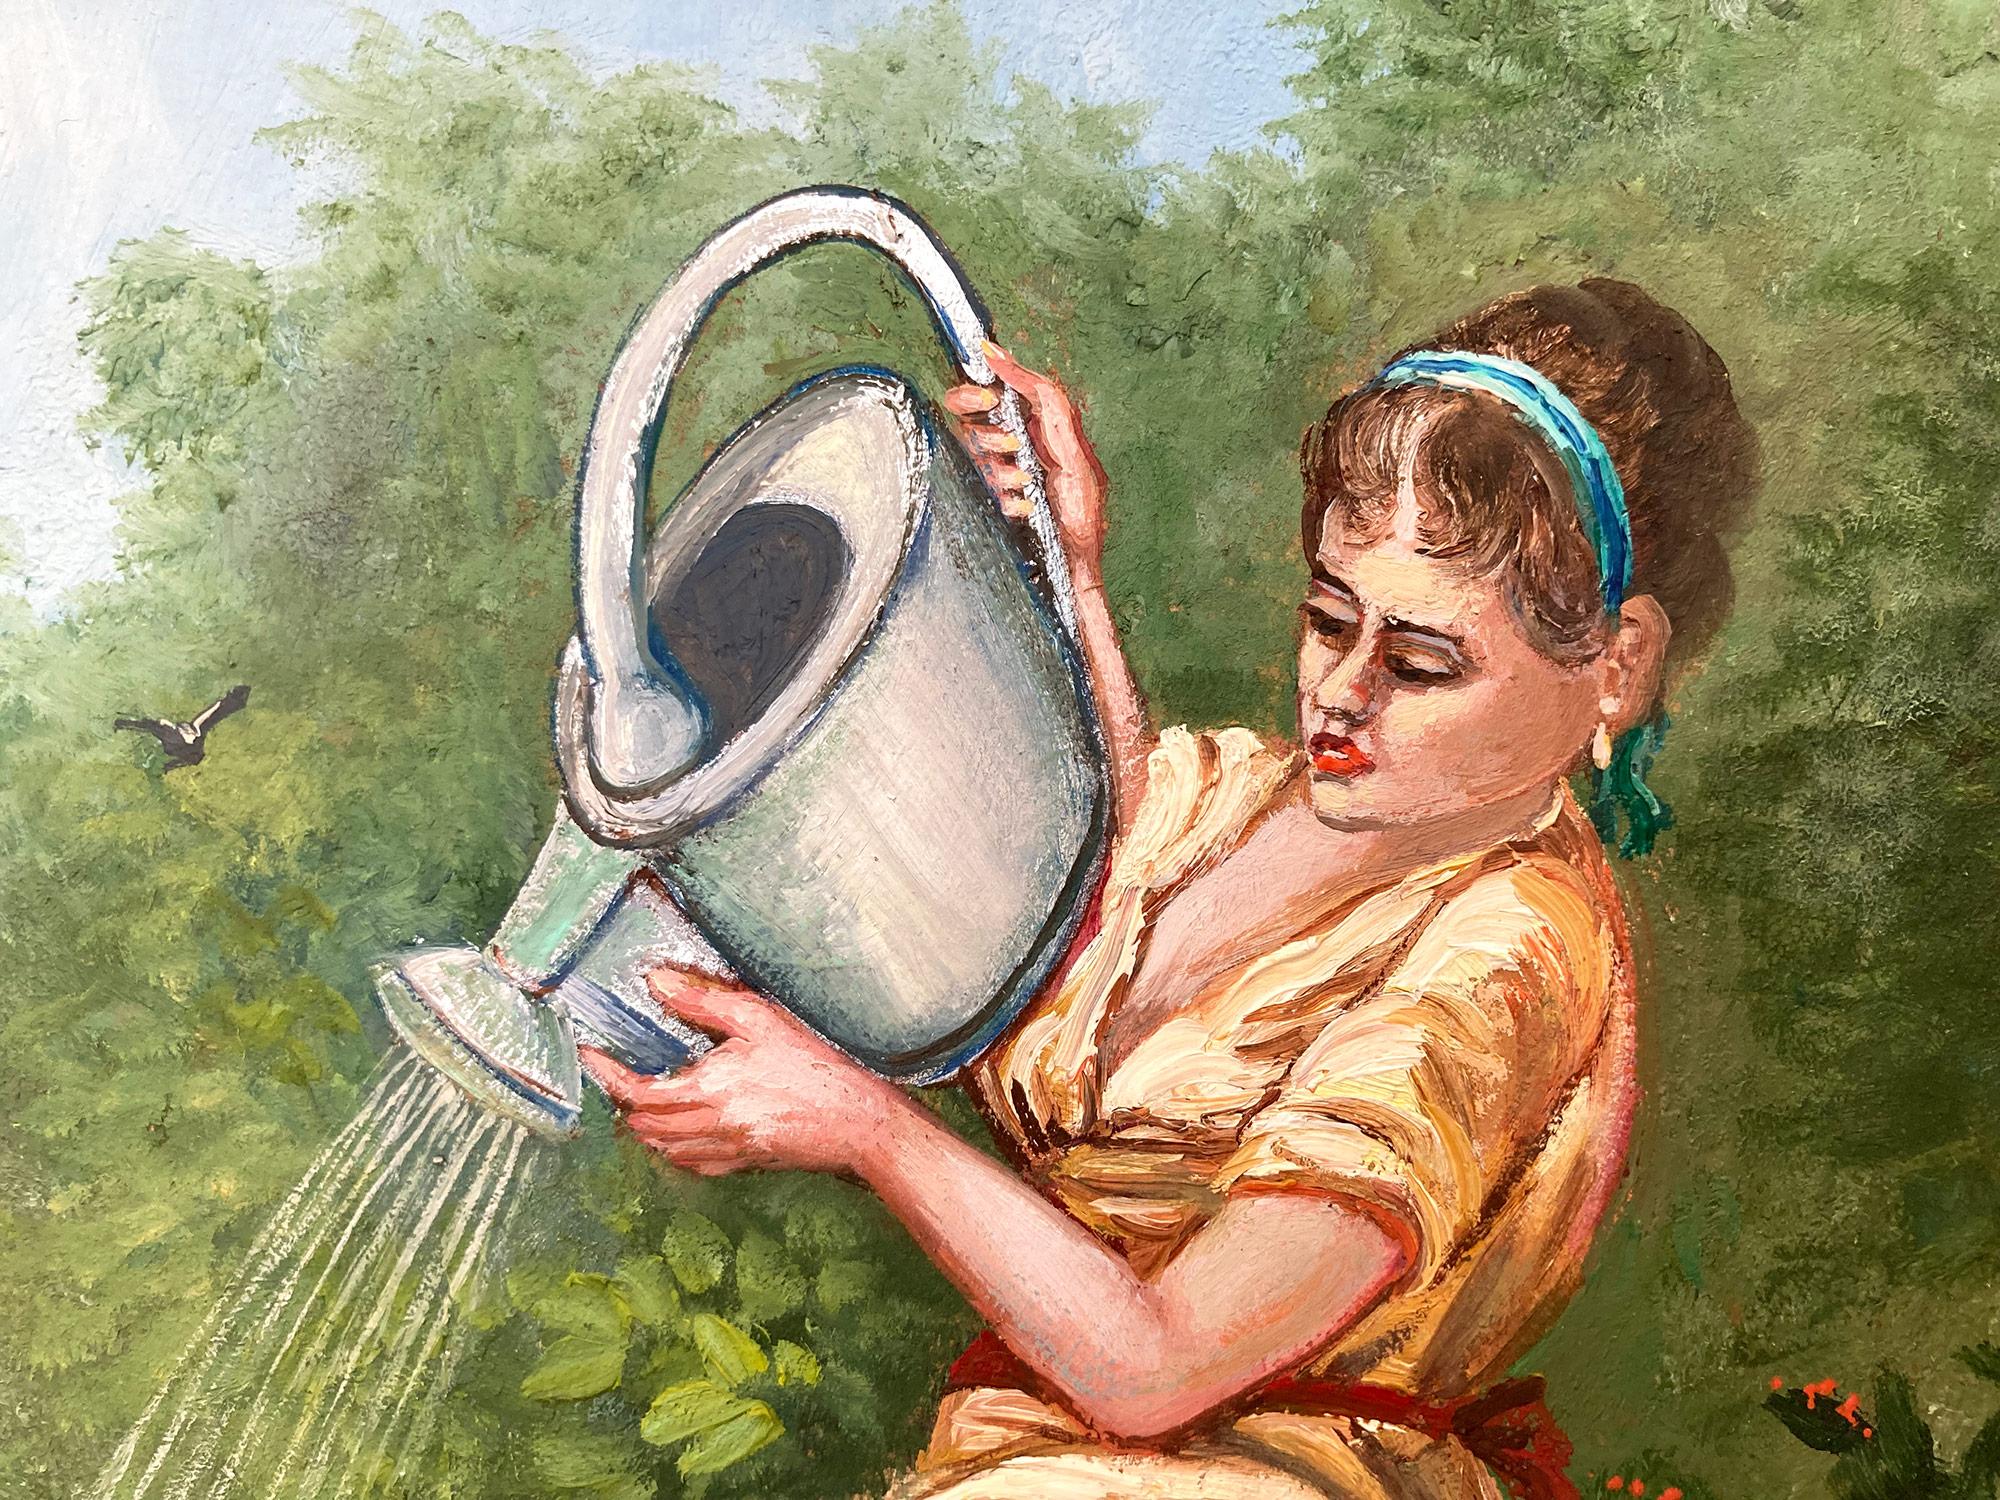 Une représentation étonnante d'une femme classique arrosant une fleur dans un jardin. Nemethy utilise une technique impressionniste audacieuse avec une utilisation épaisse de la peinture et de merveilleuses impressions. Avec les couleurs uniques du